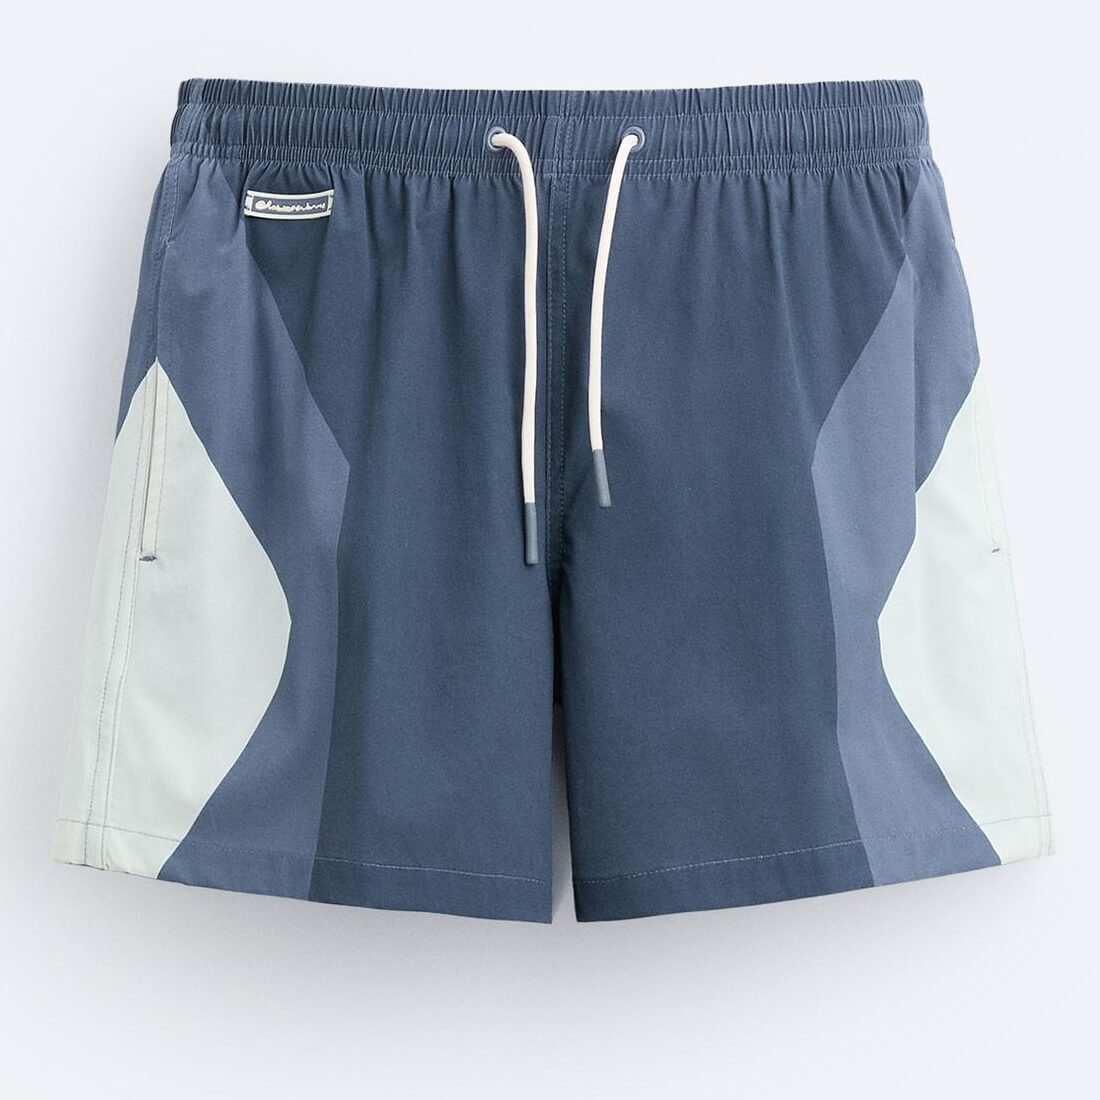 Плавательные шорты Zara Colour Block, синий/серый плавательные шорты zara paisley print синий серый